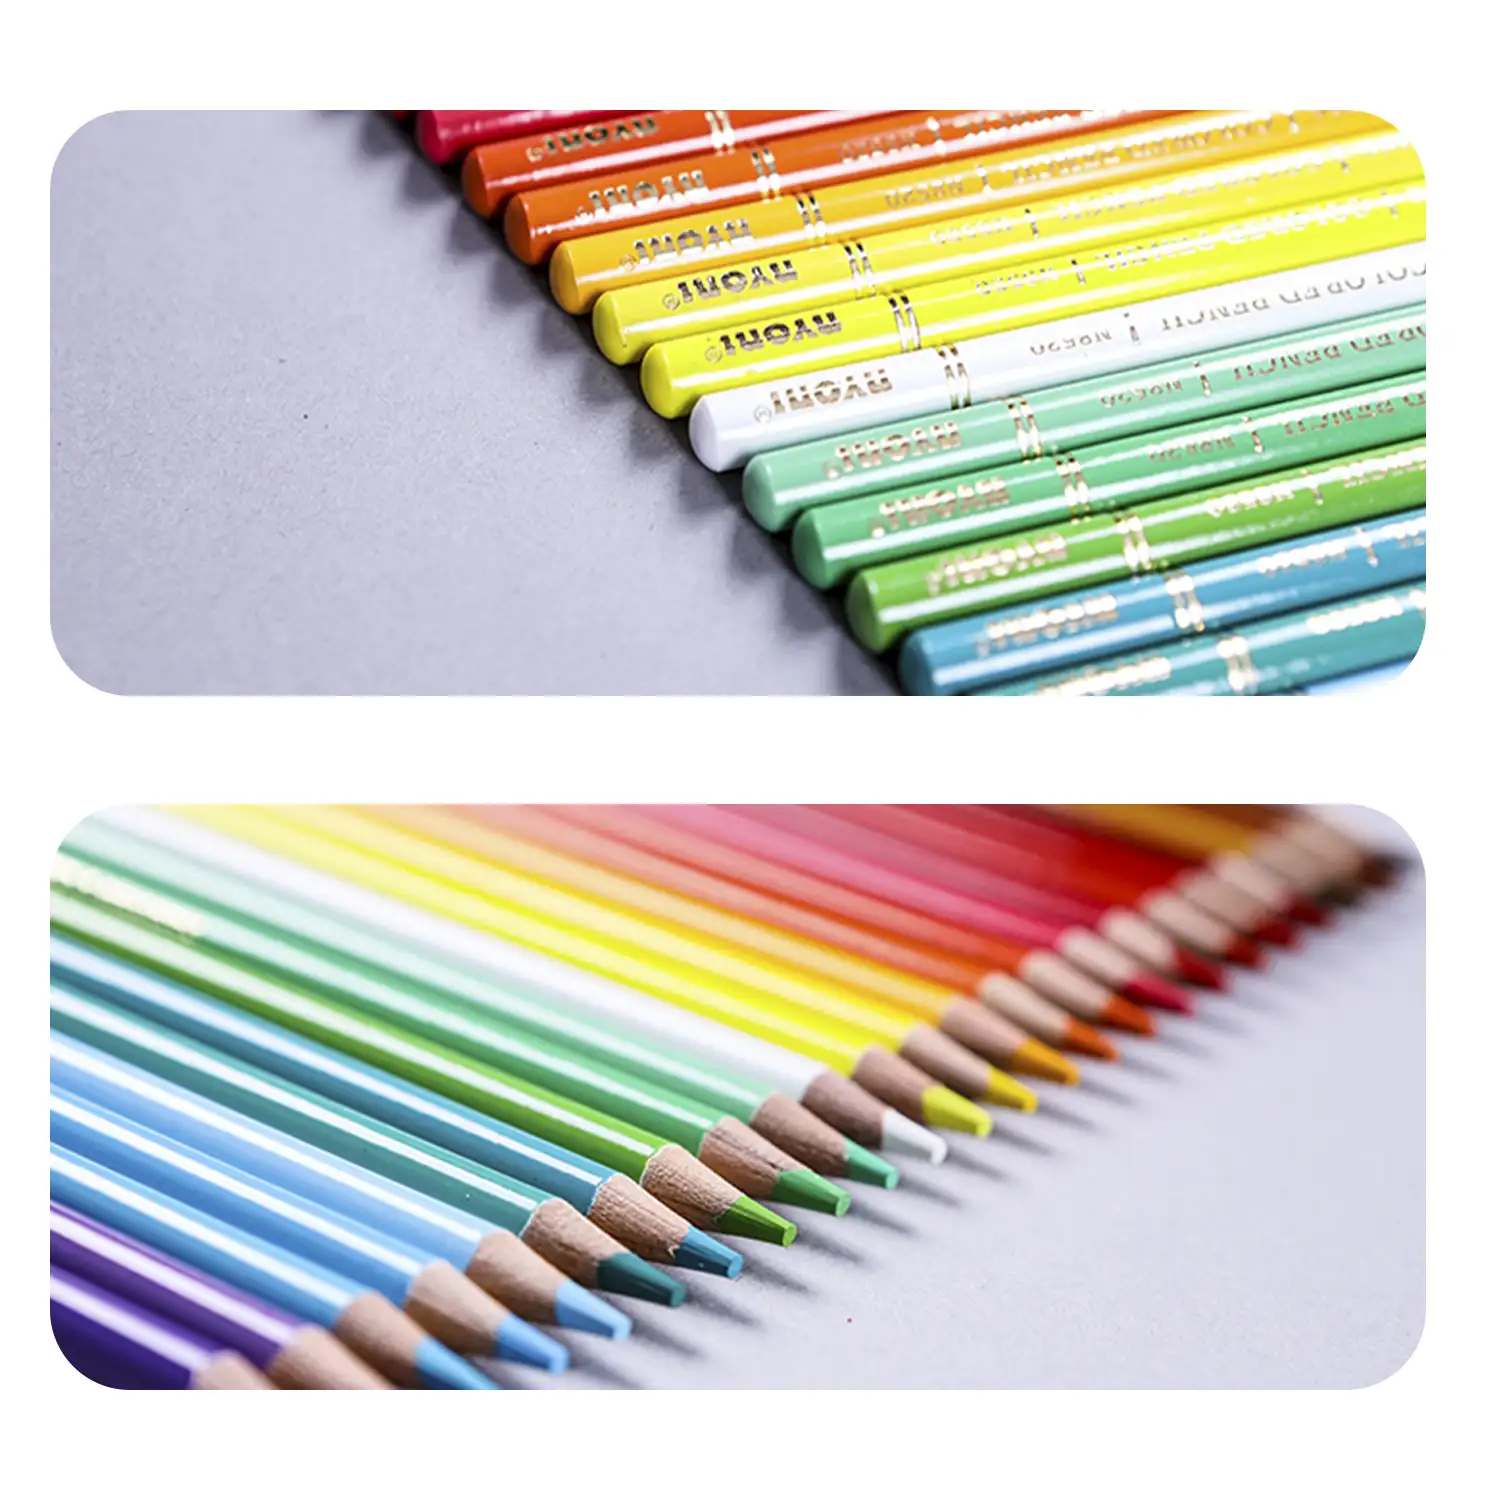 Set de 48 lápices de colores. Fabricados en madera, forma redonda profesional.